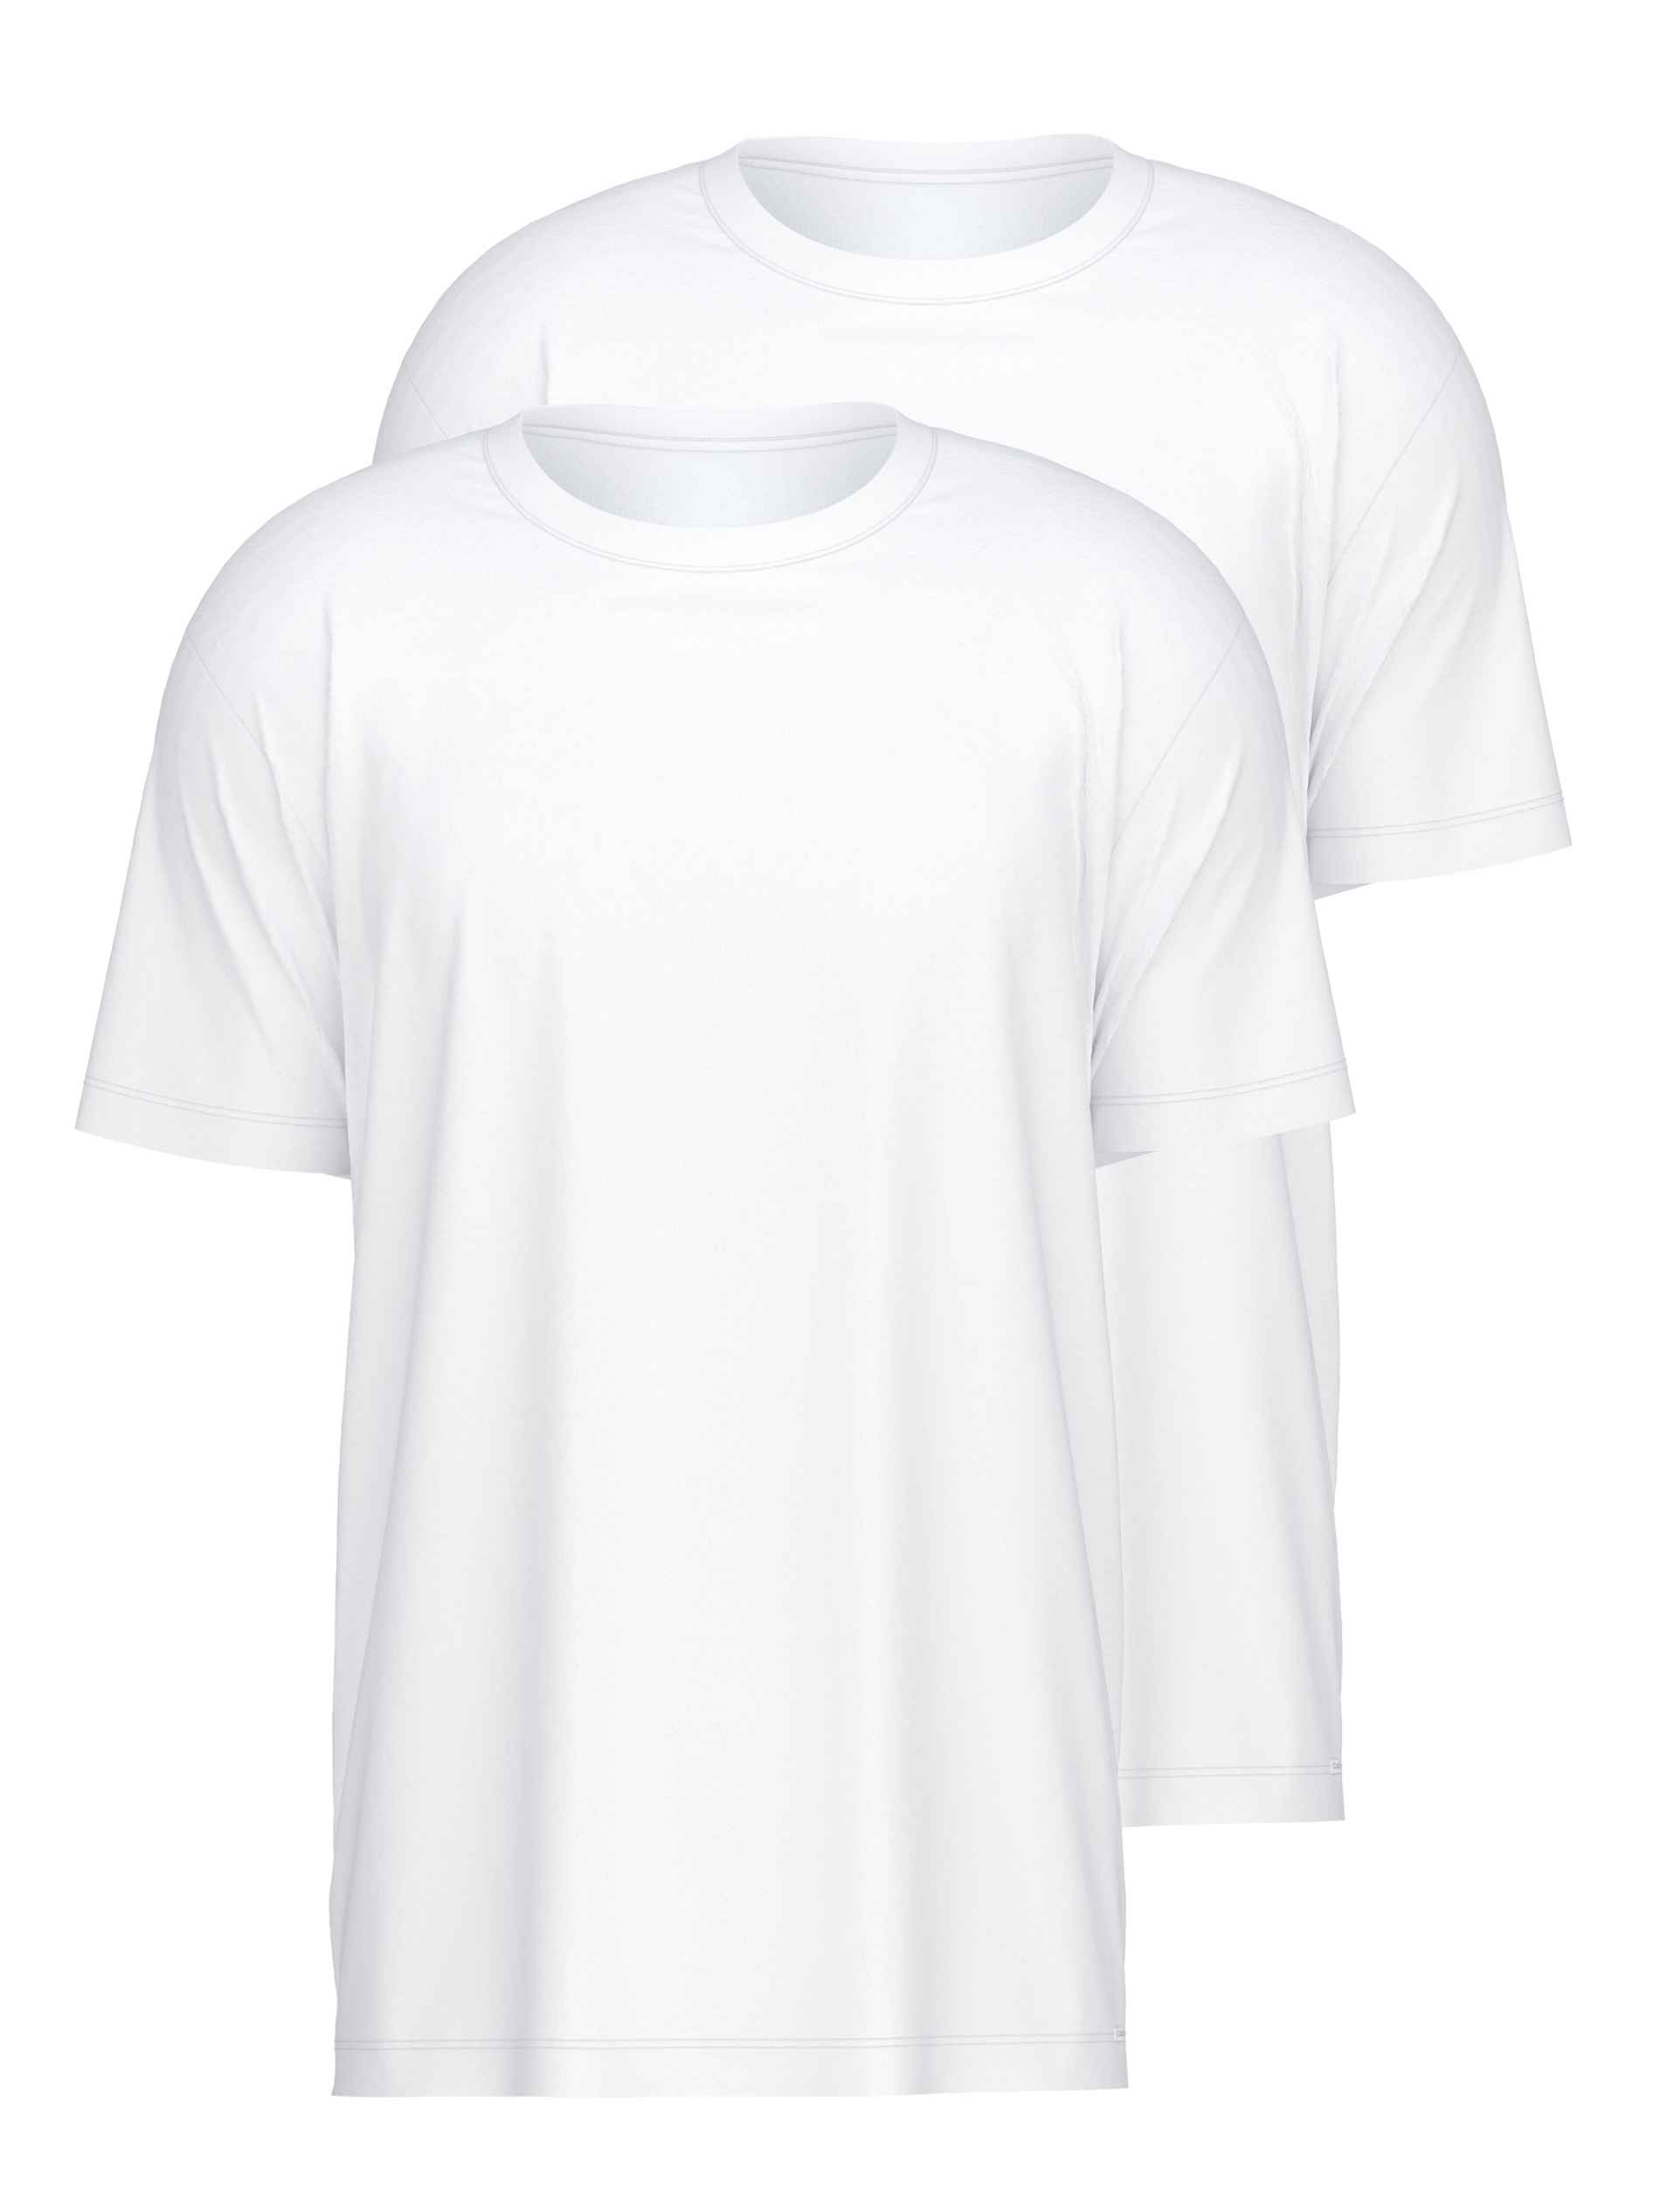 CALIDA T-Shirt, Benefit 2er-Pack weiss Natural